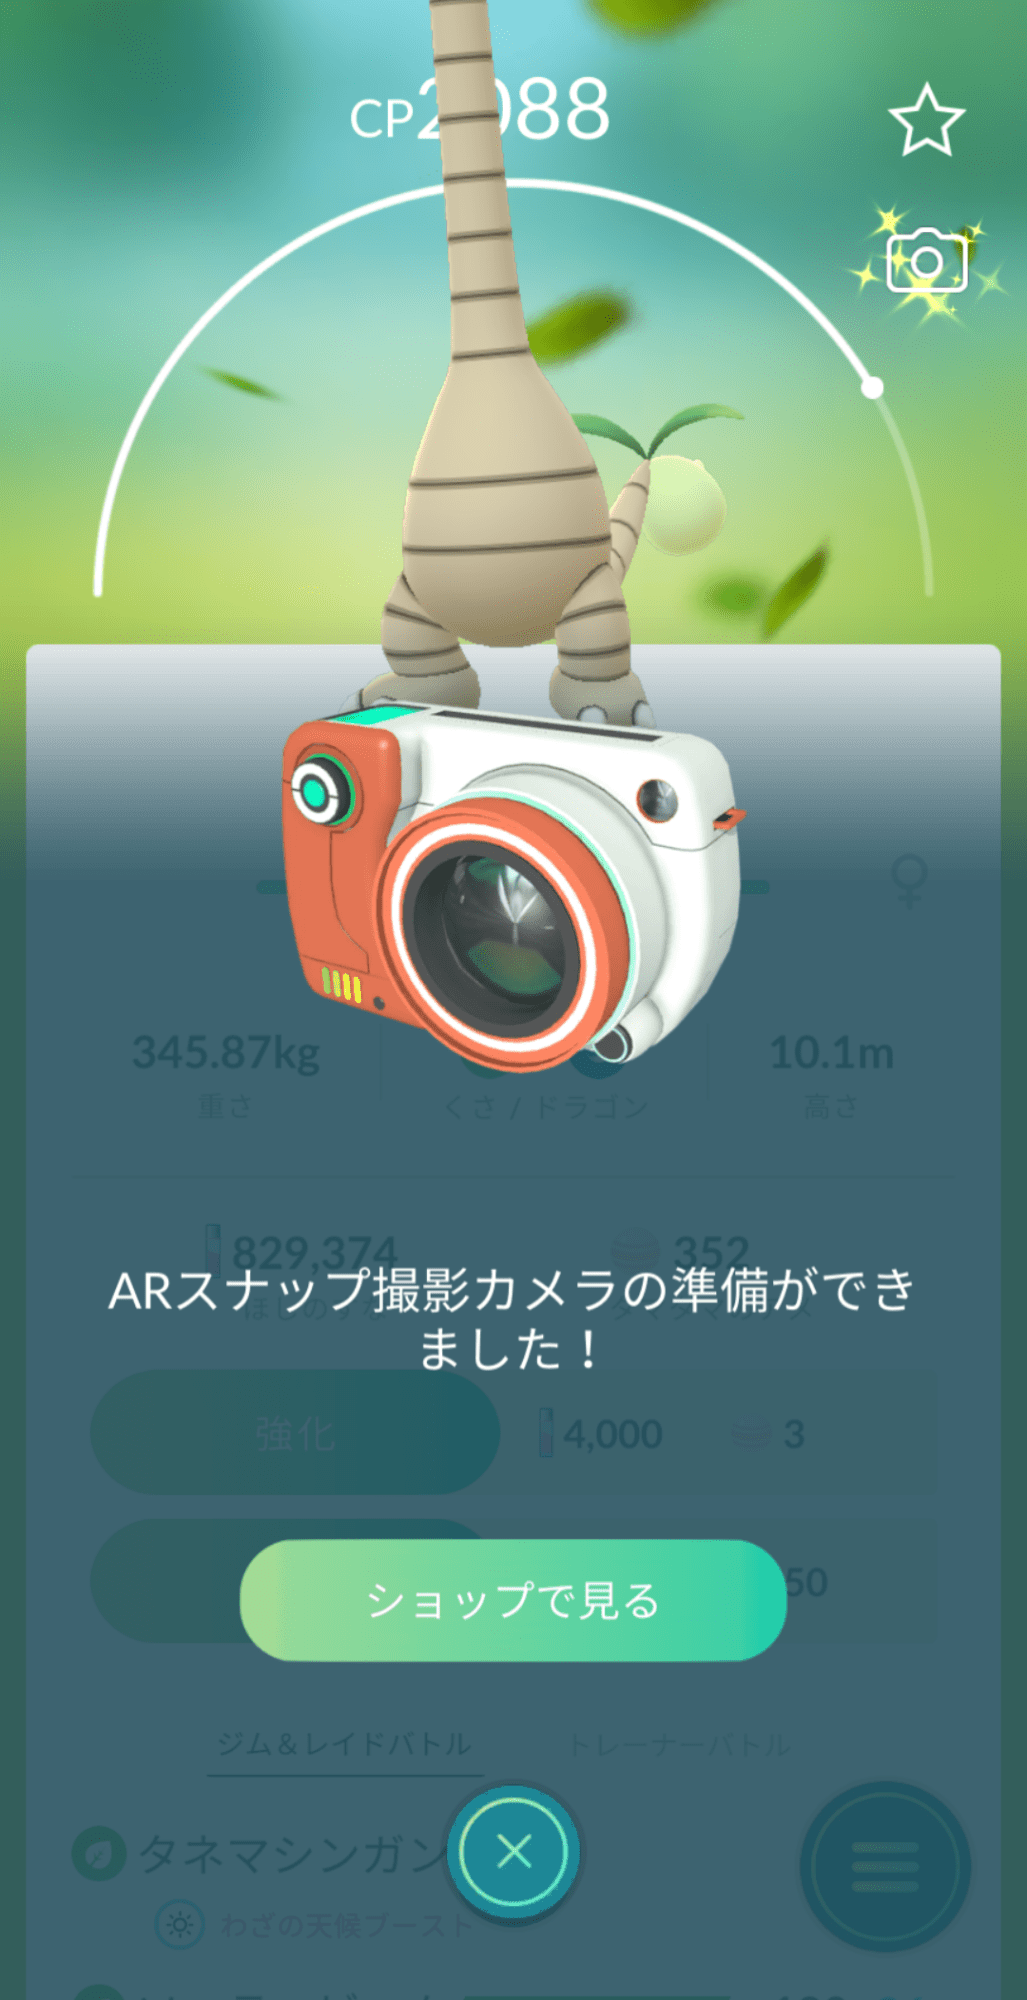 ポケモンgo いつでもar撮影 Goスナップショット 提供開始 使い方まとめ Engadget 日本版